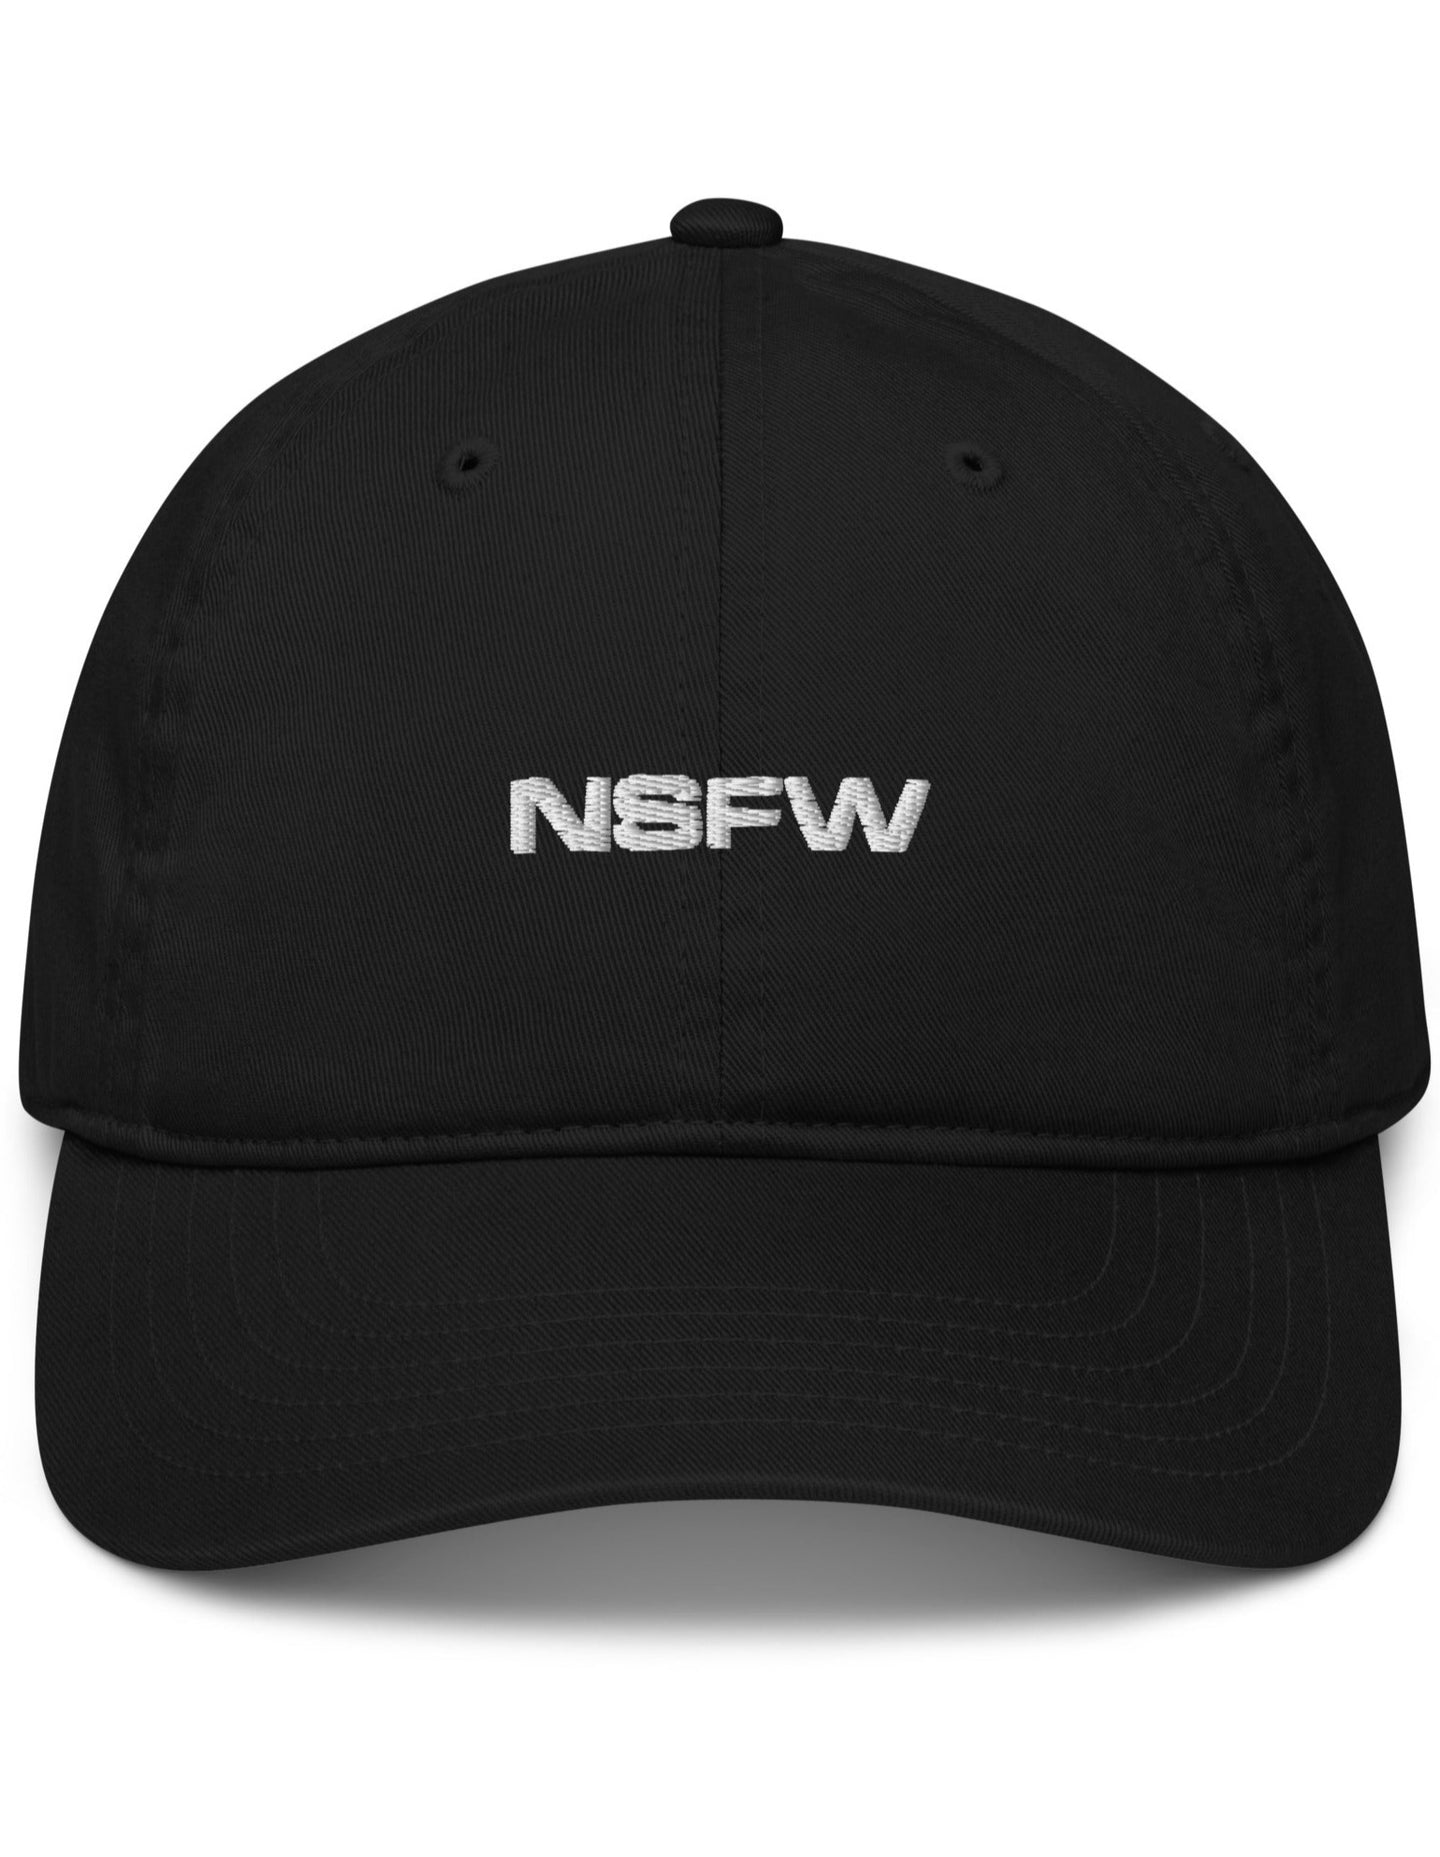 NSFW white thread hat